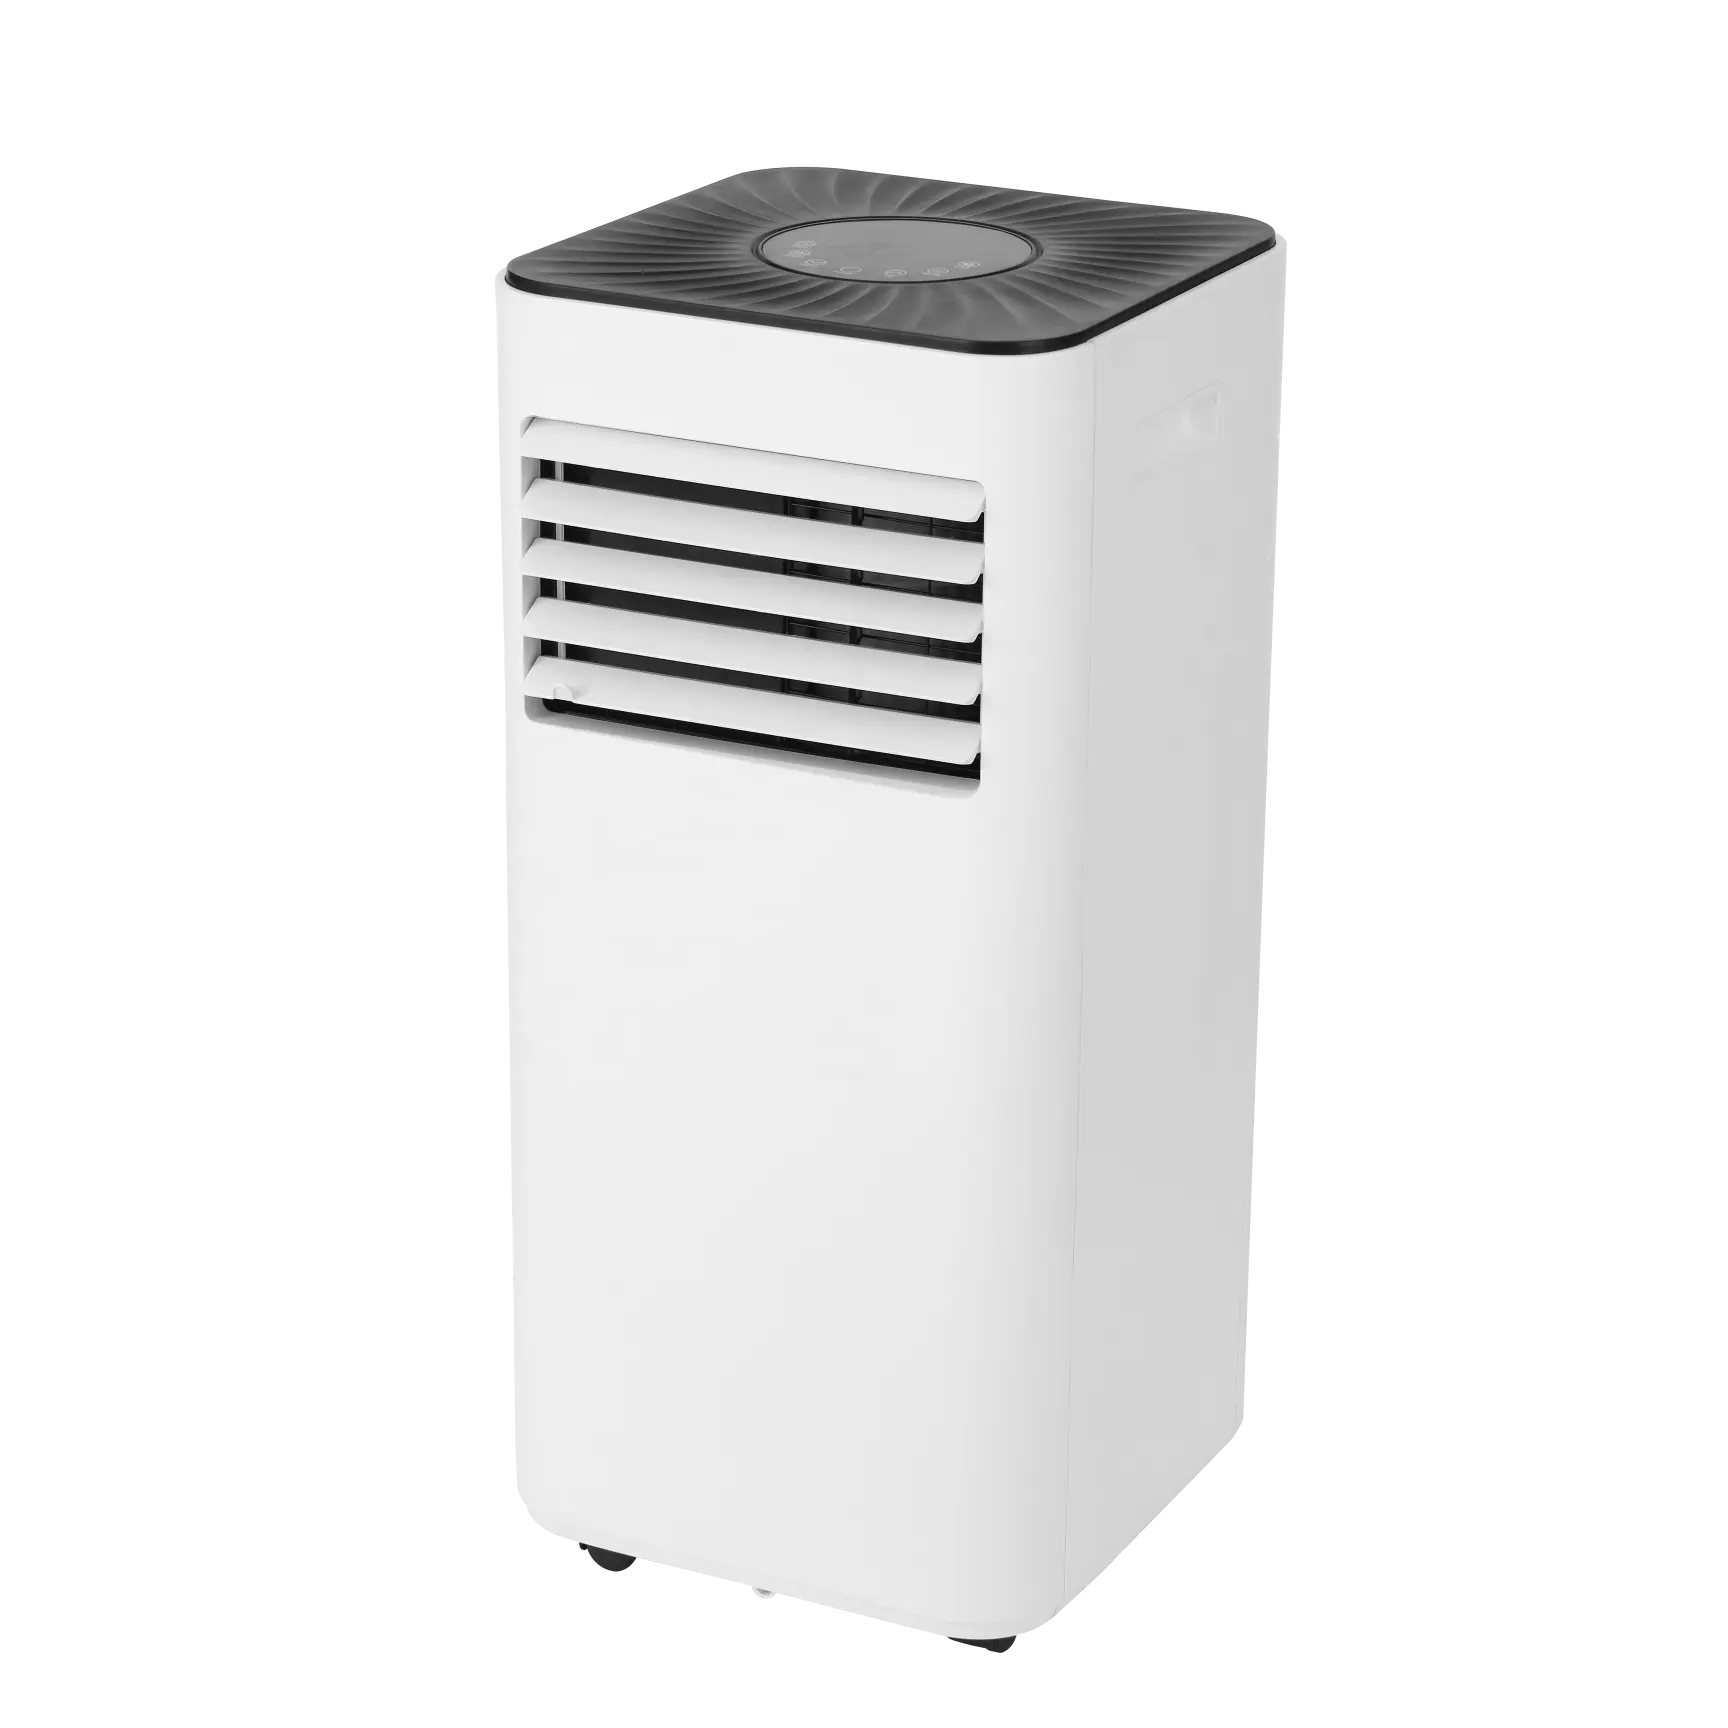 جهاز تكييف هواء محمول للاستخدام المنزلي 5000BTU مع خاصية WiFi للتدفئة والتبريد ومزيل الرطوبة جهاز تكييف هواء كهربائي قابل للنقل لغرفة